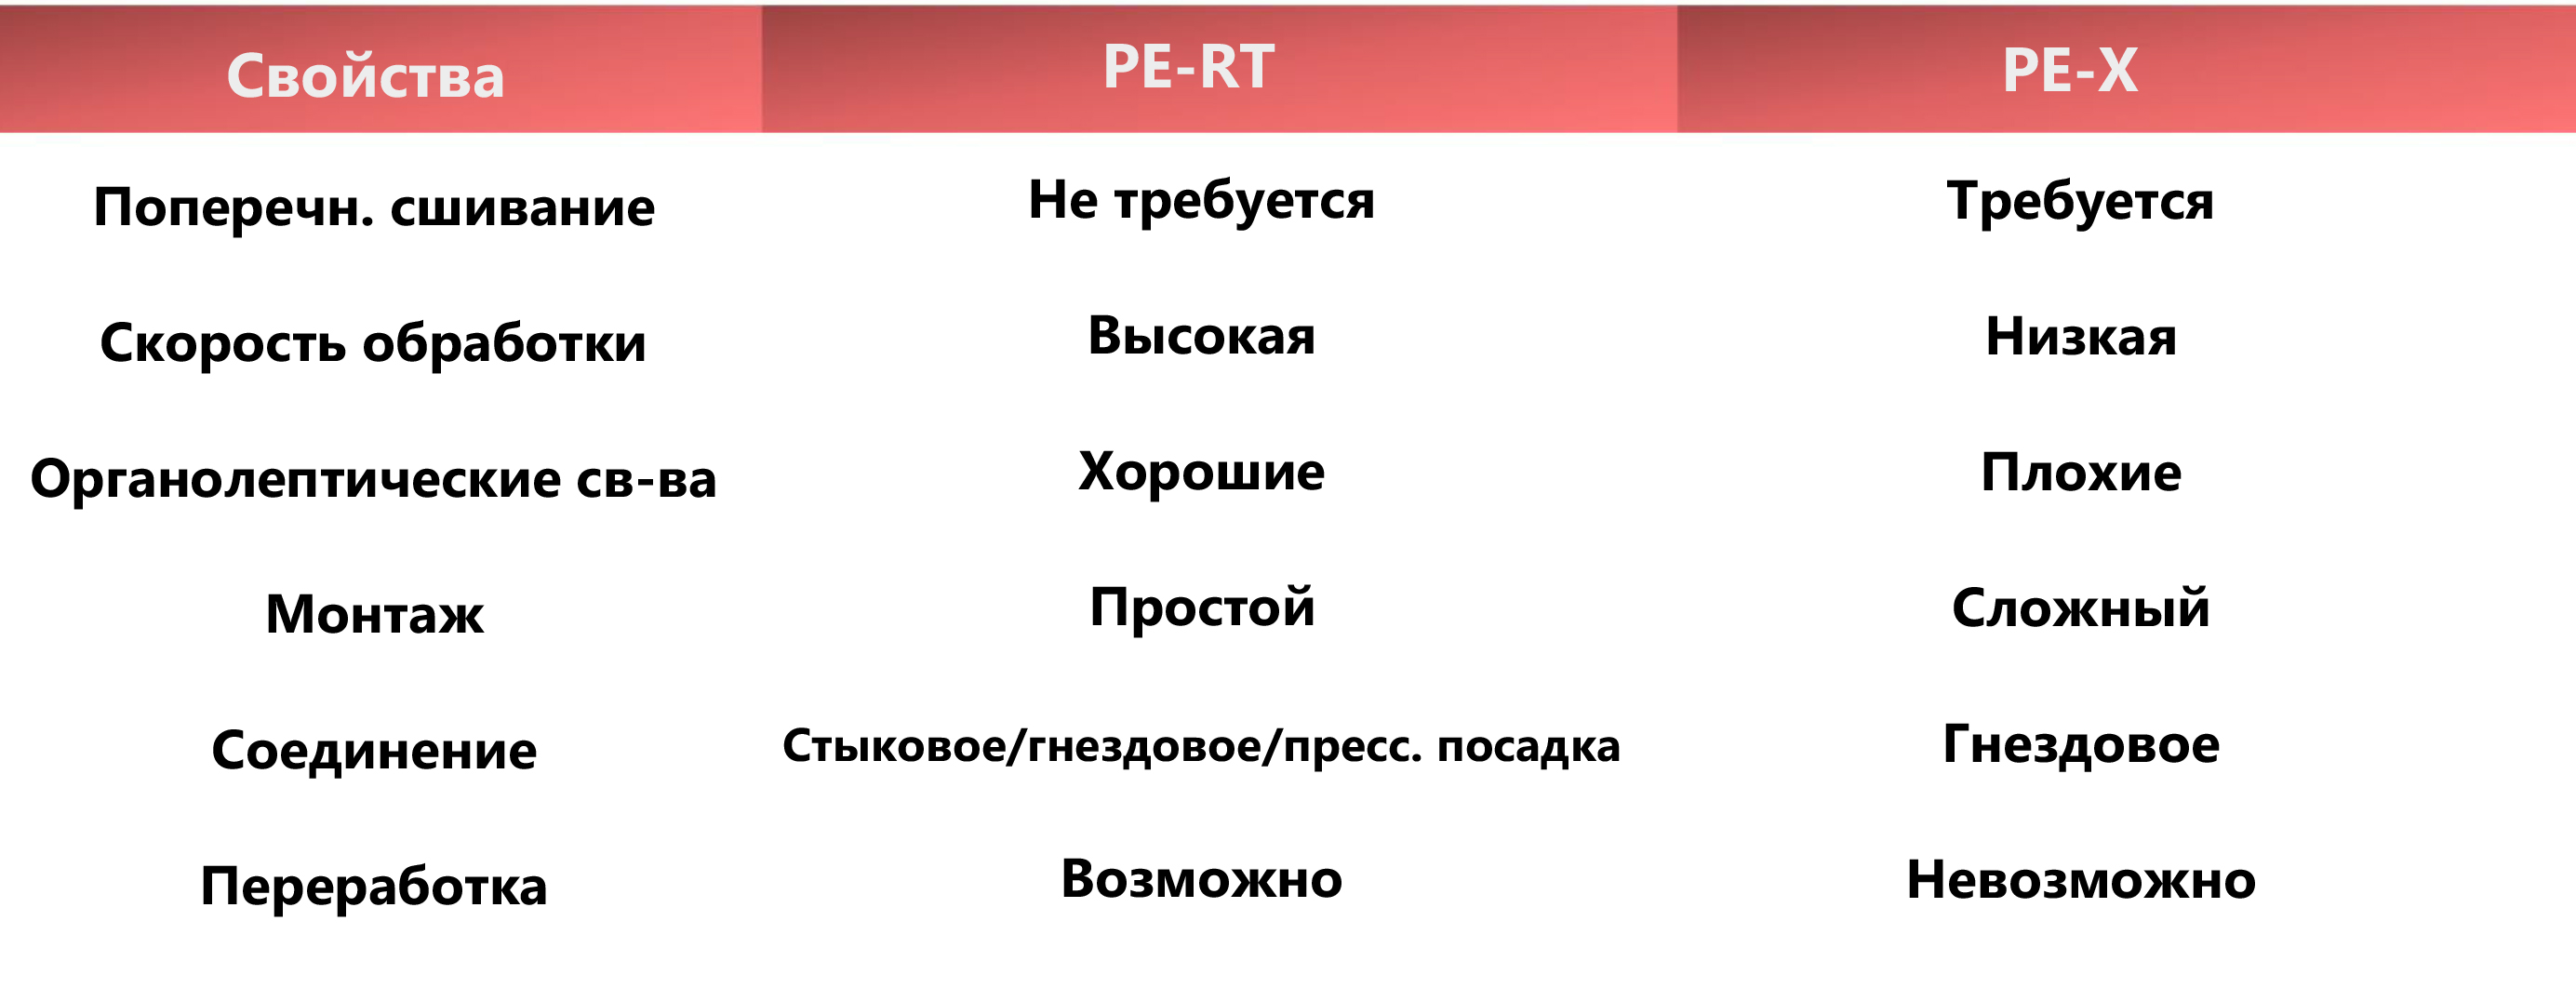 Сравнительная таблица (сравнение с PE-X)